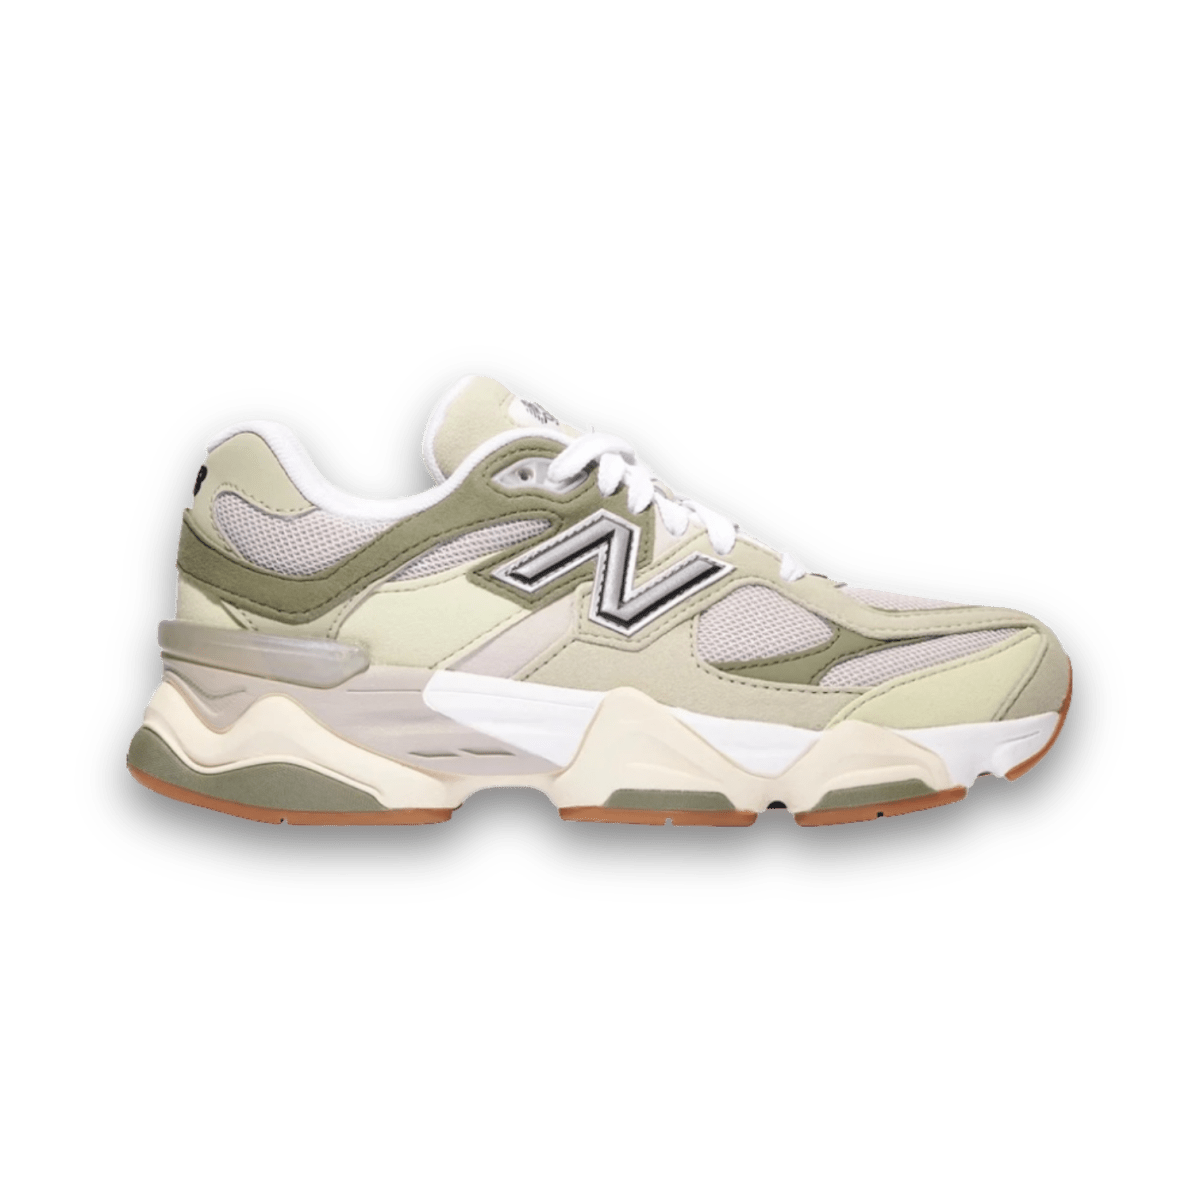 New Balance 9060 'Green Gum' - Grade School - Low Sneaker - Jawns on Fire Sneakers & Streetwear